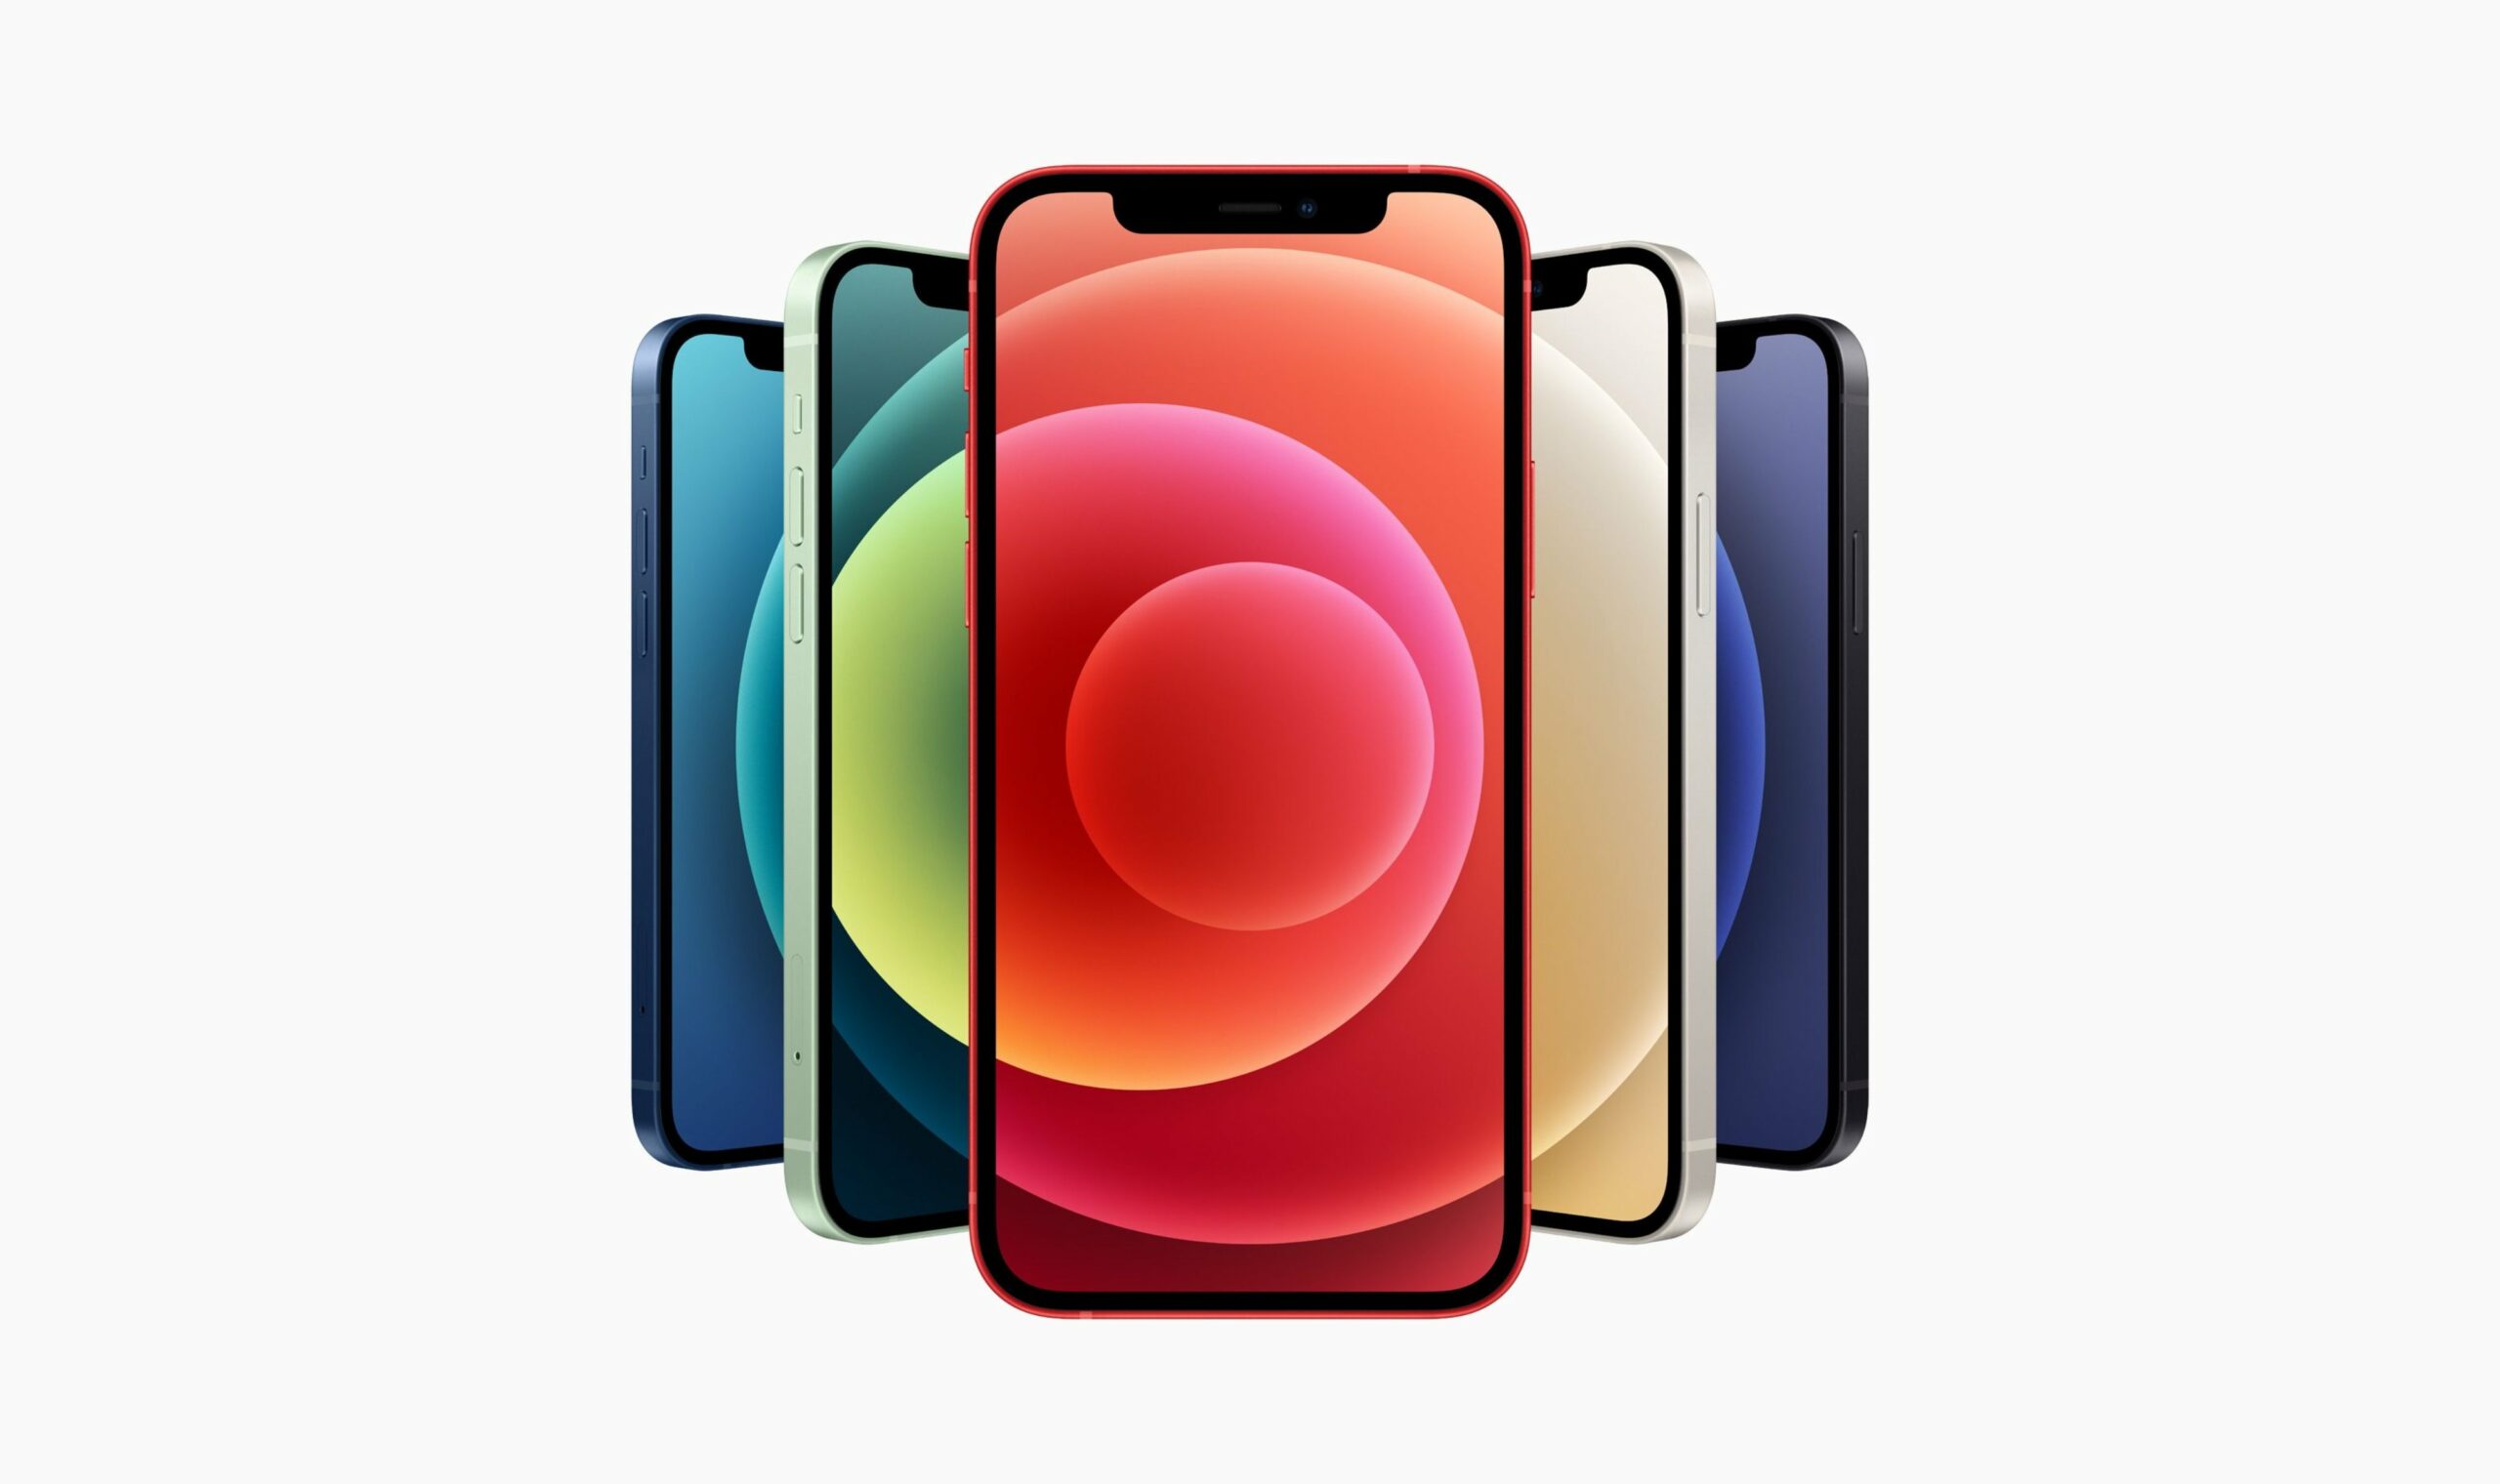 Apple iPhone 12 Tất cả các màu nổi bật